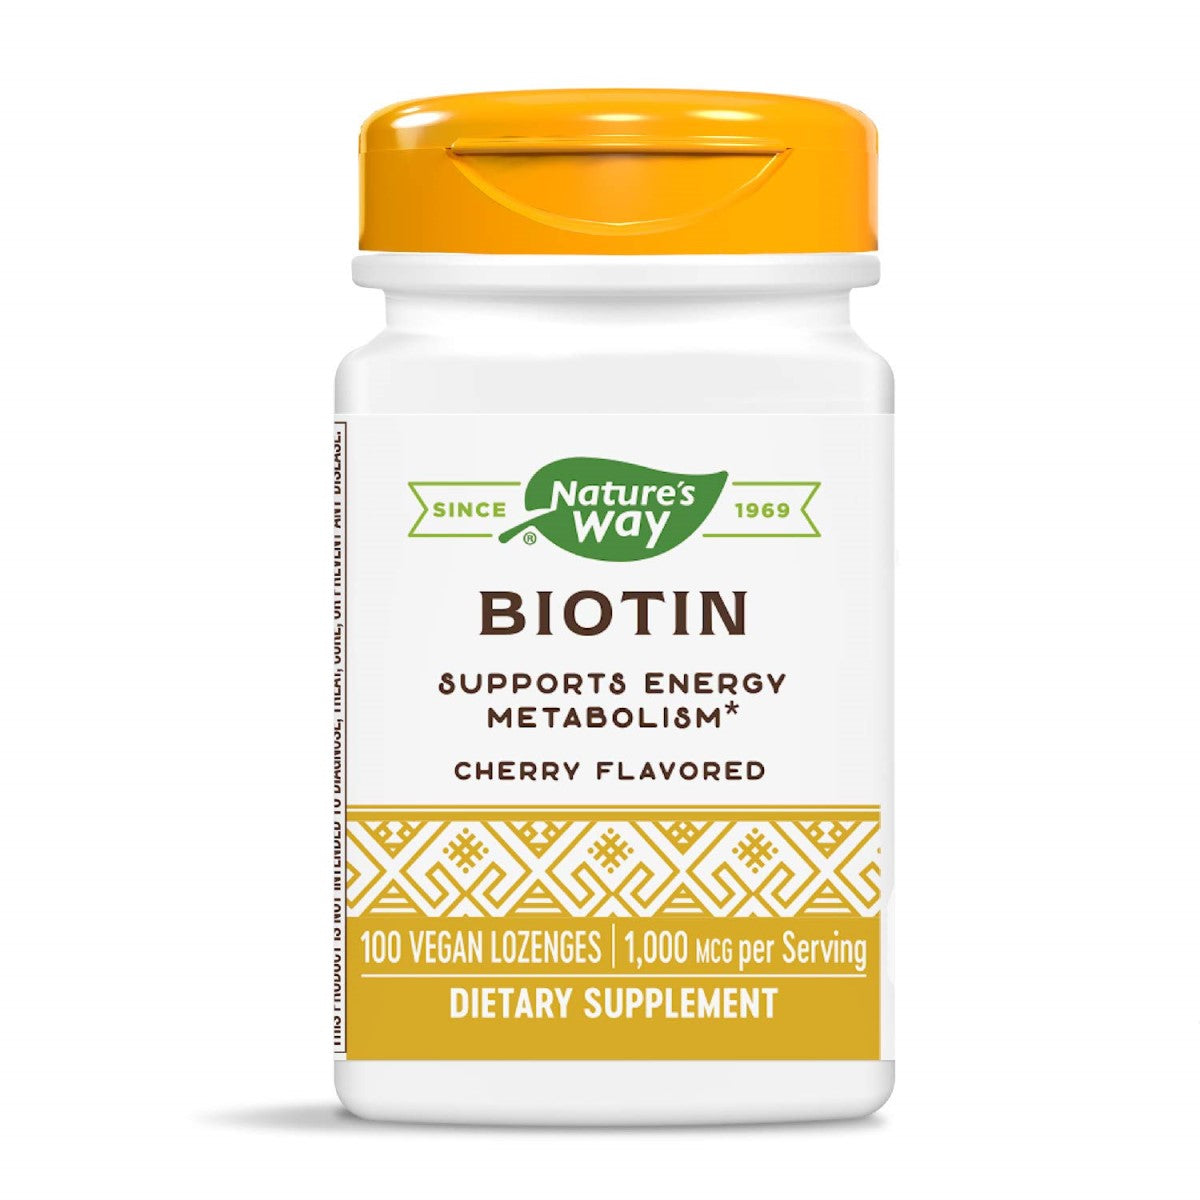 Primary image of Biotin